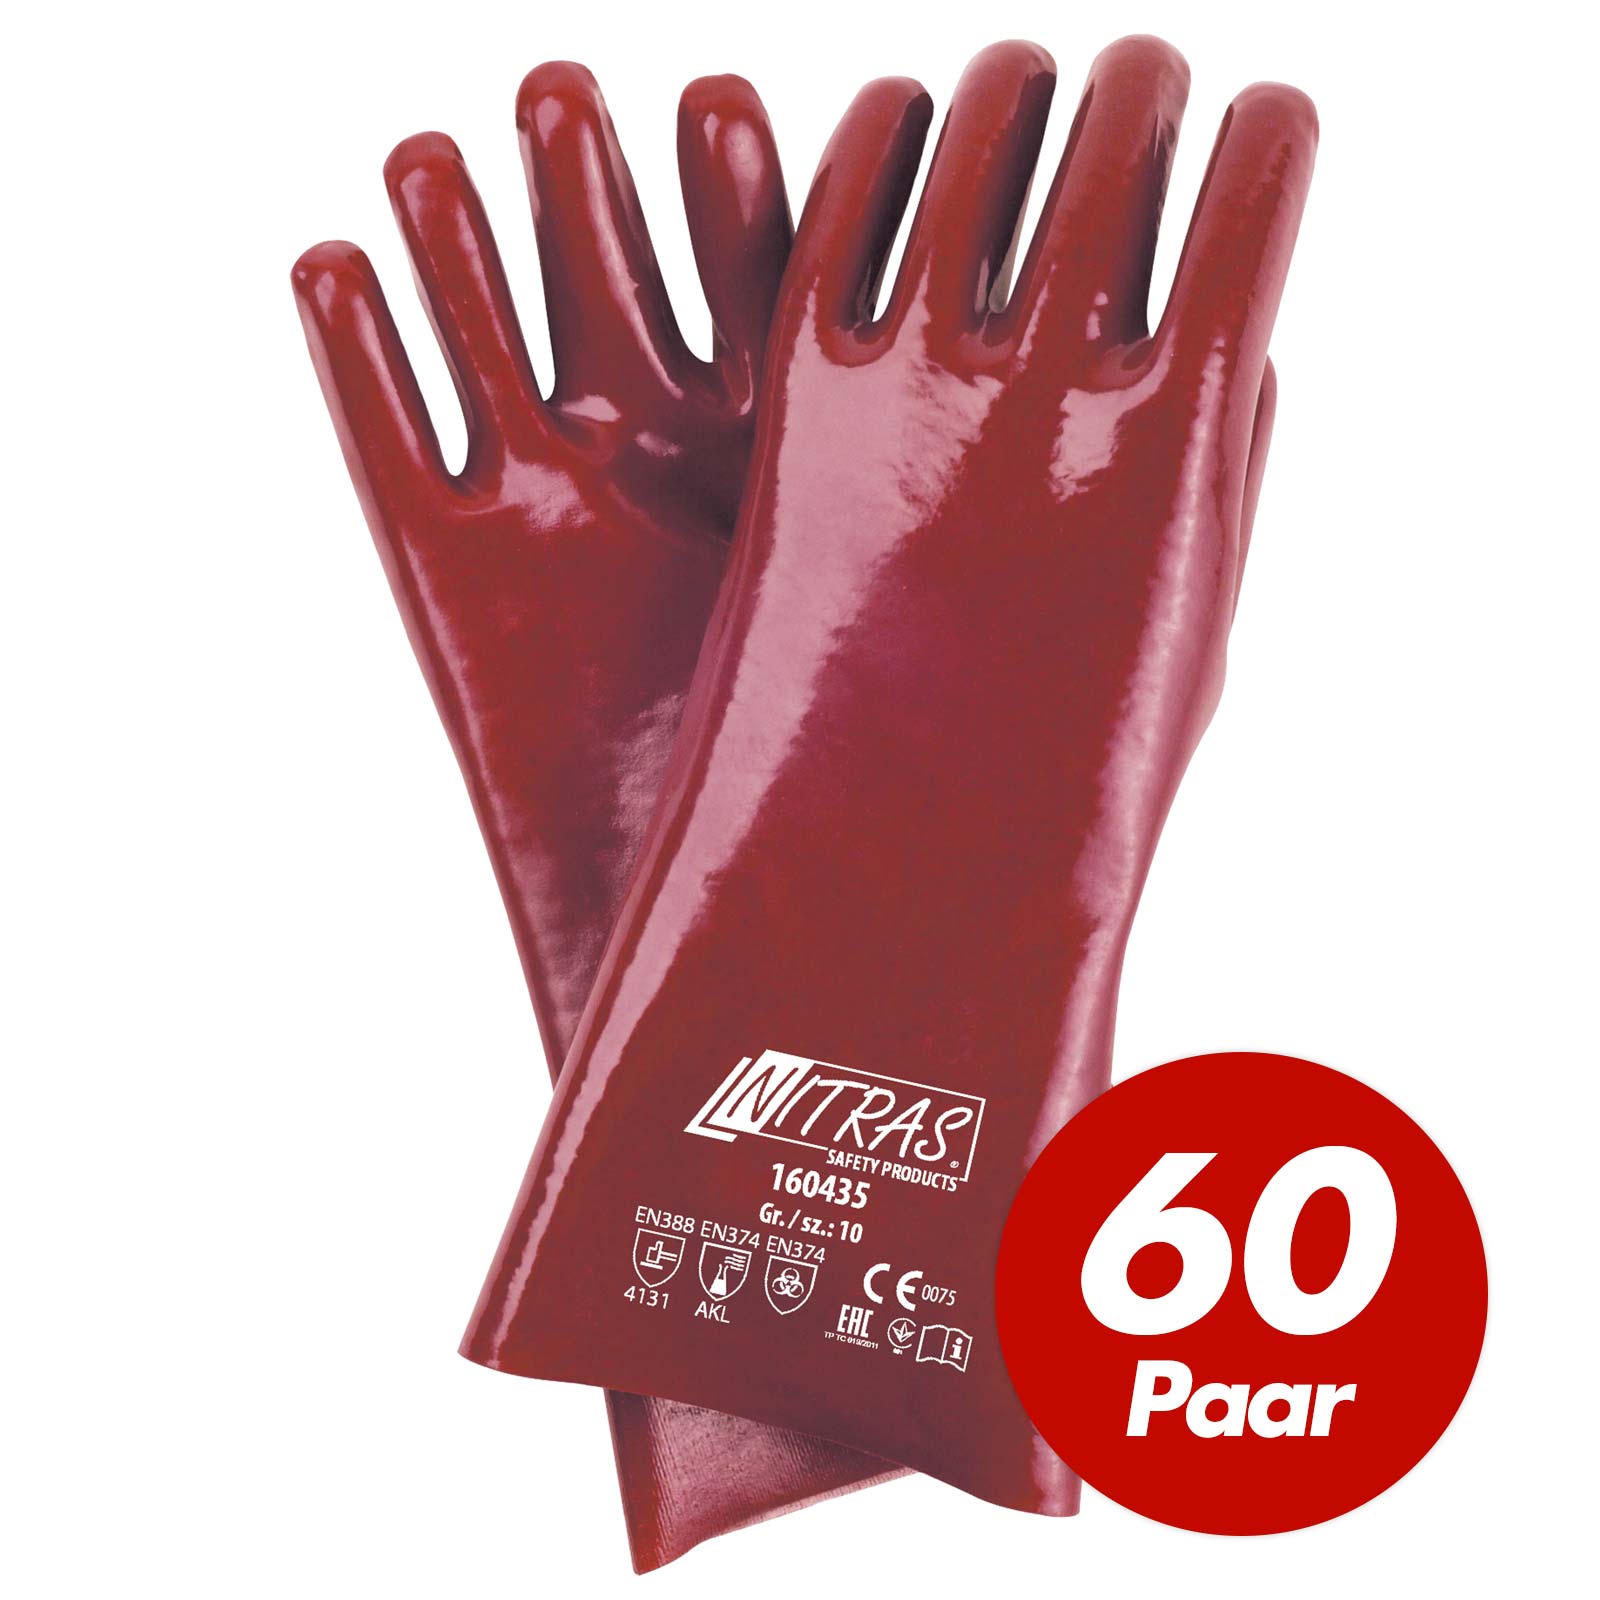 NITRAS PVC-Handschuhe 160435 vollbeschichtet Chemikalienhandschuhe - 60 Paar Größe:10 von NITRAS